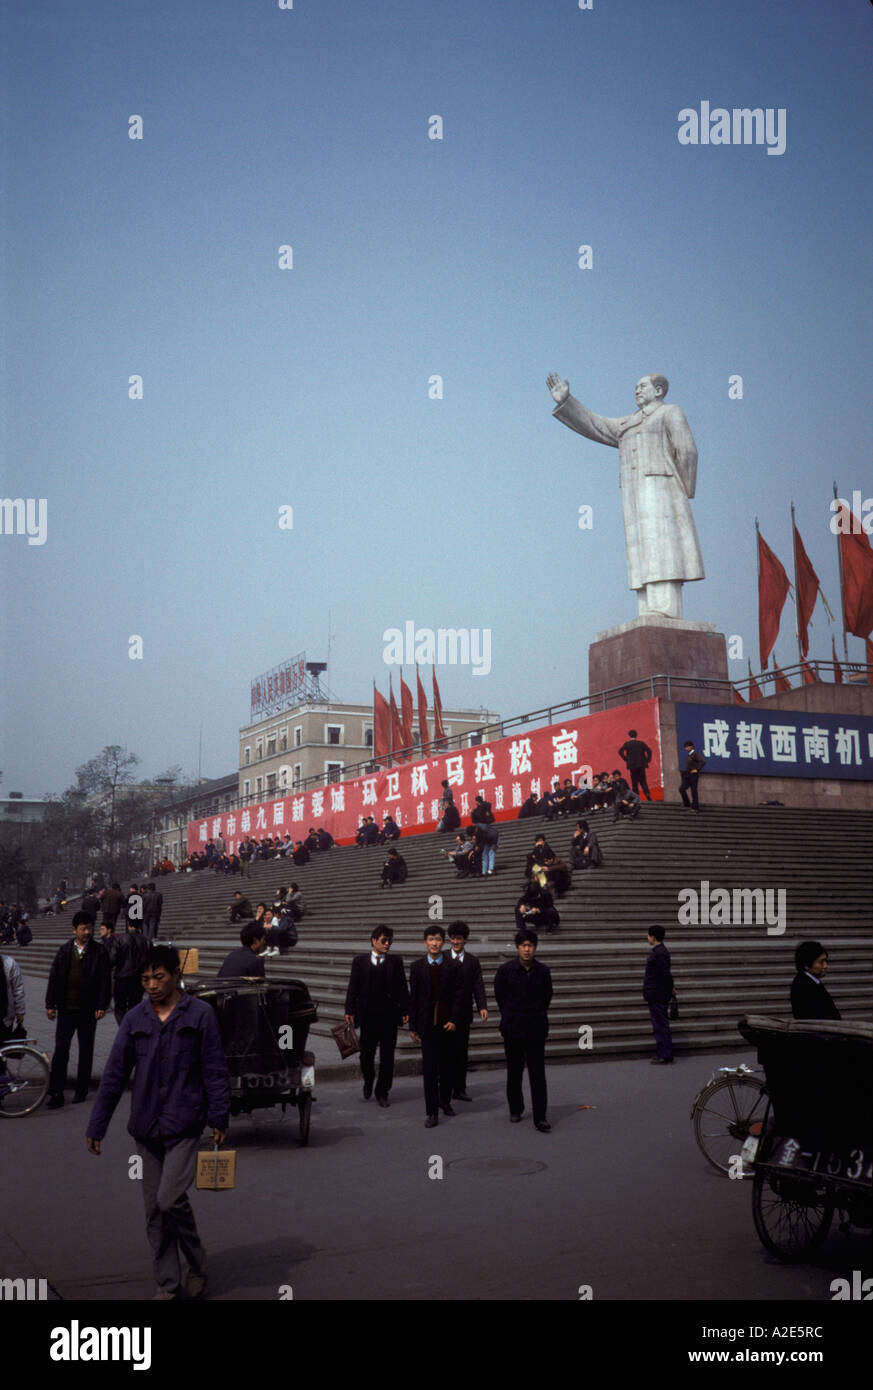 La Chine, Grand Mao Tsedong statue, drapeaux communistes, caractère des bannières avec des slogans du gouvernement Banque D'Images